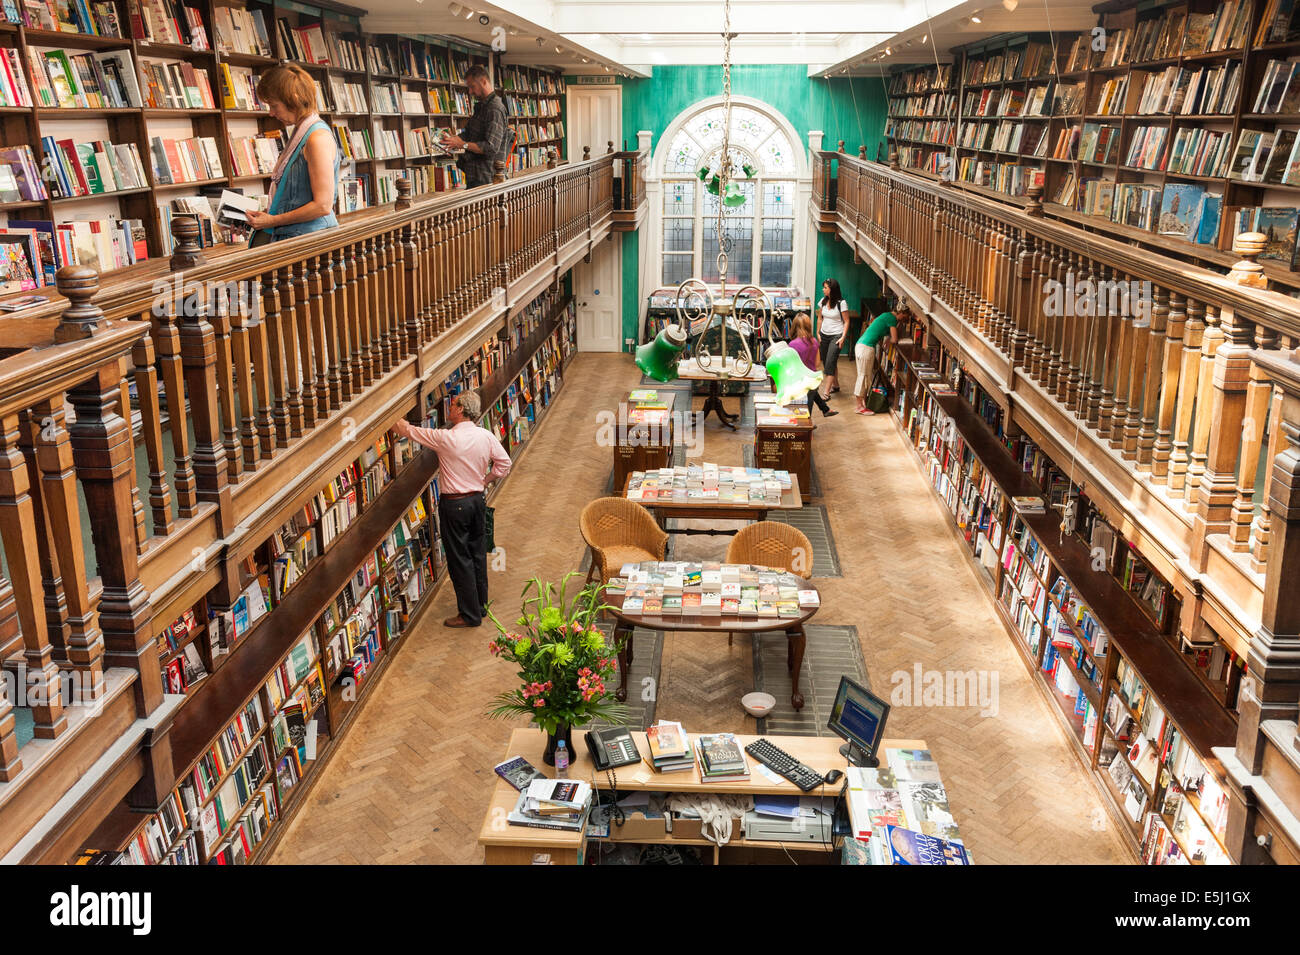 Daunt Books, Marylebone, London, England, UK Stock Photo